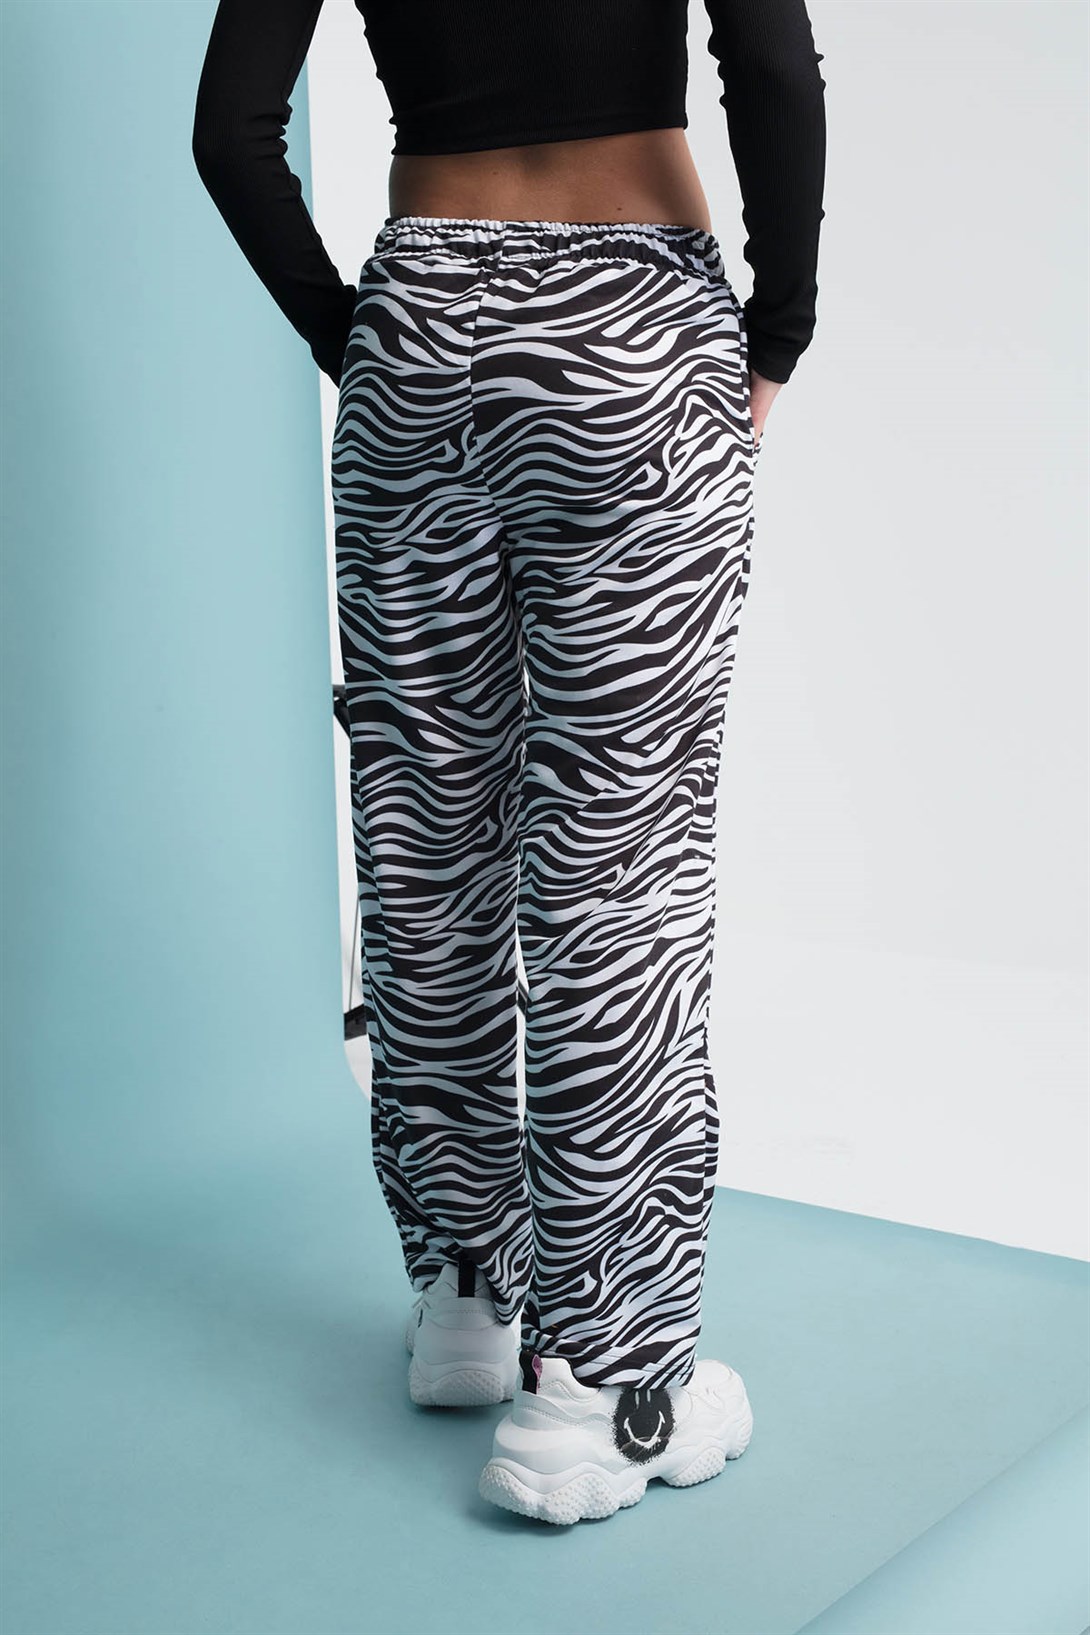 Trendiz Zebra Kadın Eşofman Altı Siyah 111202